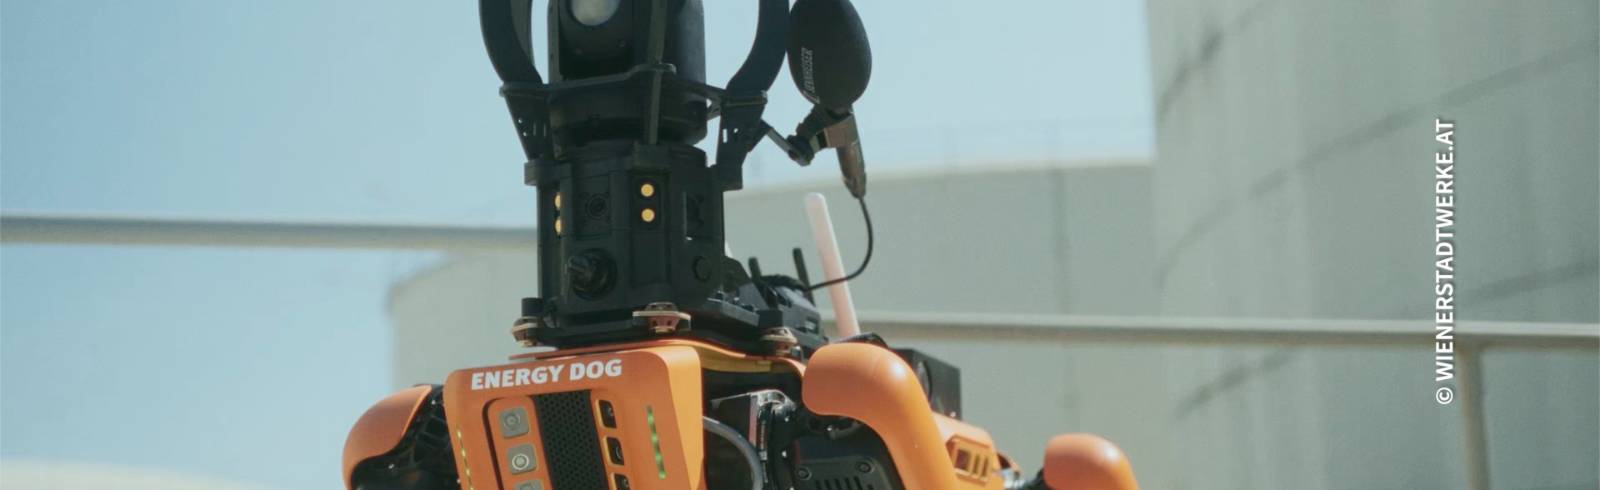 Roboterhund macht Kraftwerksarbeit sicherer